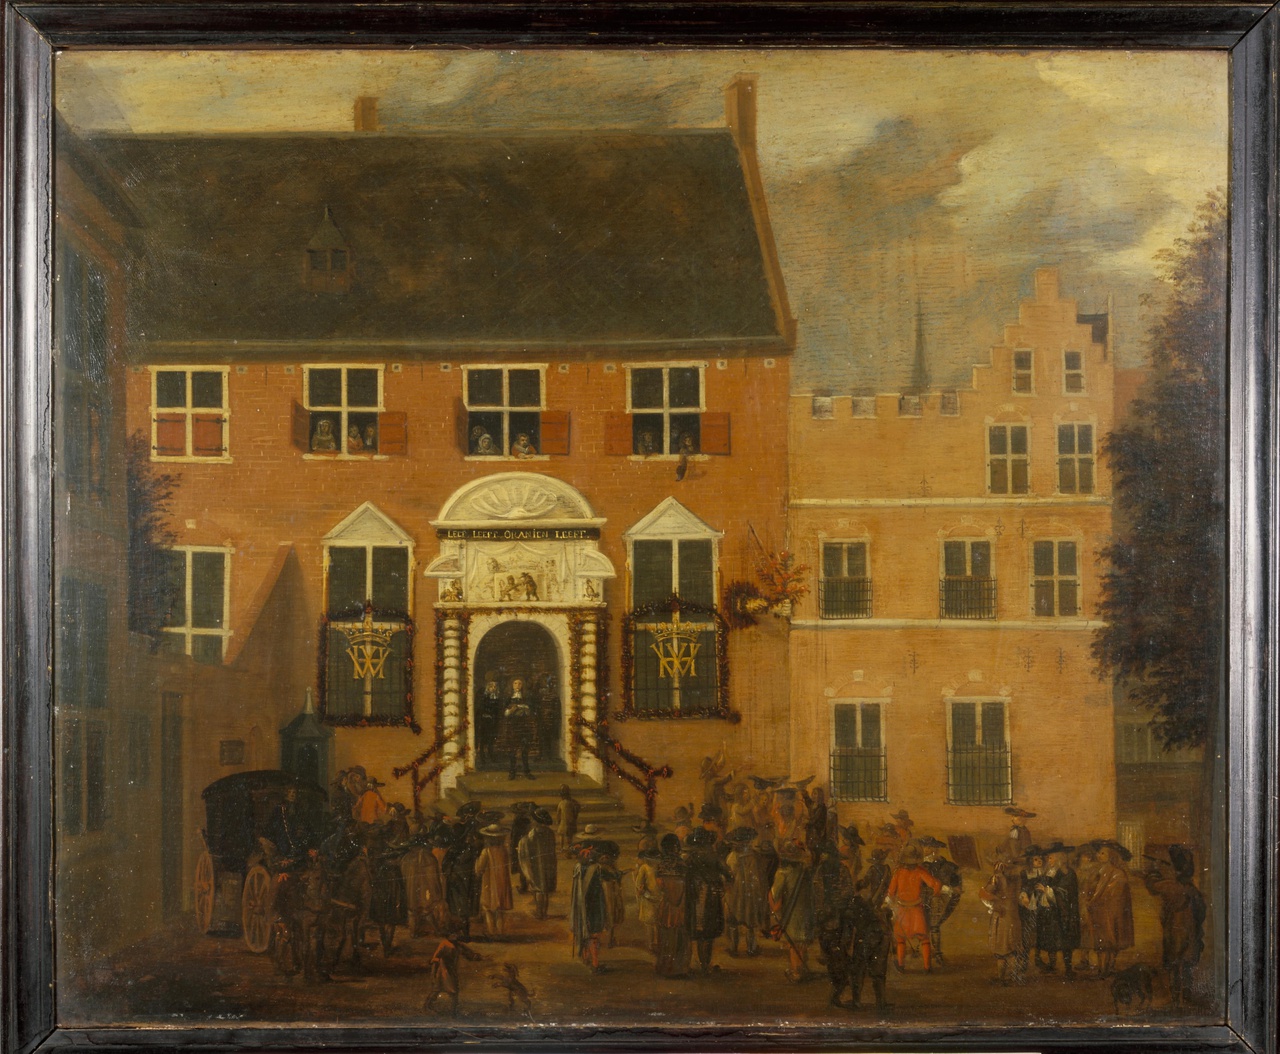 Afkondiging van het nieuwe regeringsregelement te Utrecht in 1674